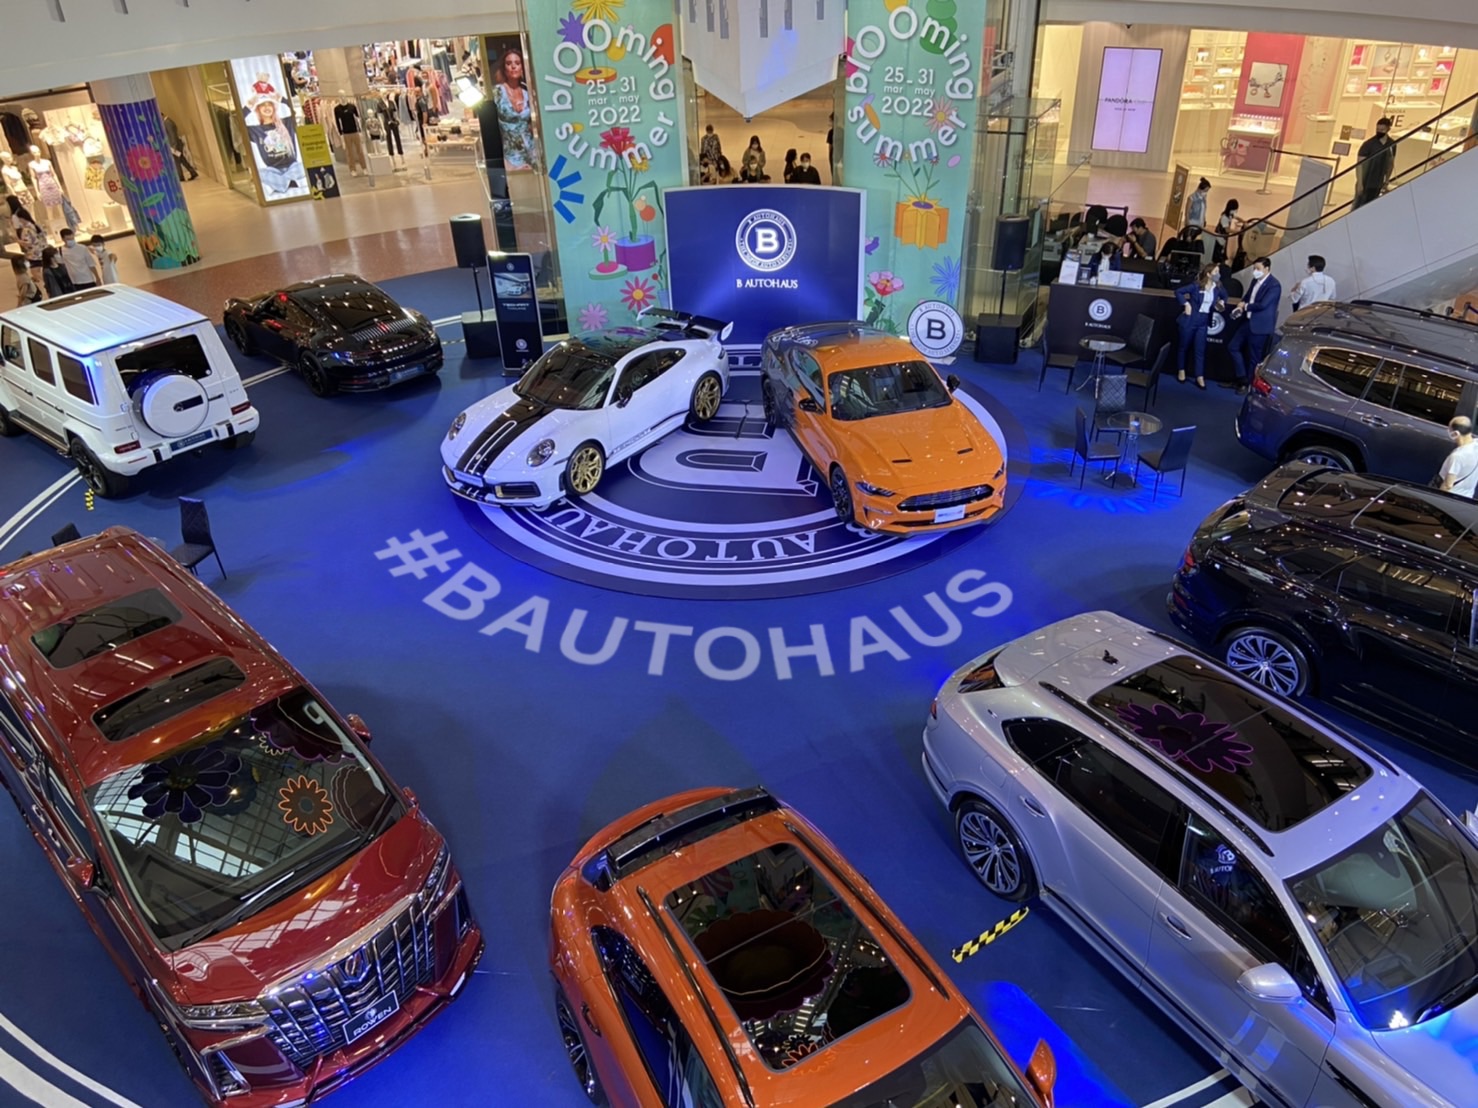 B Autohaus เติบโตก้าวกระโดด บุกตลาดรถยนต์นำเข้าเต็มกำลัง ยกทัพรถยนต์พรีเมี่ยมจากทั่วโลกจัดโรดโชว์ทั่วไทย